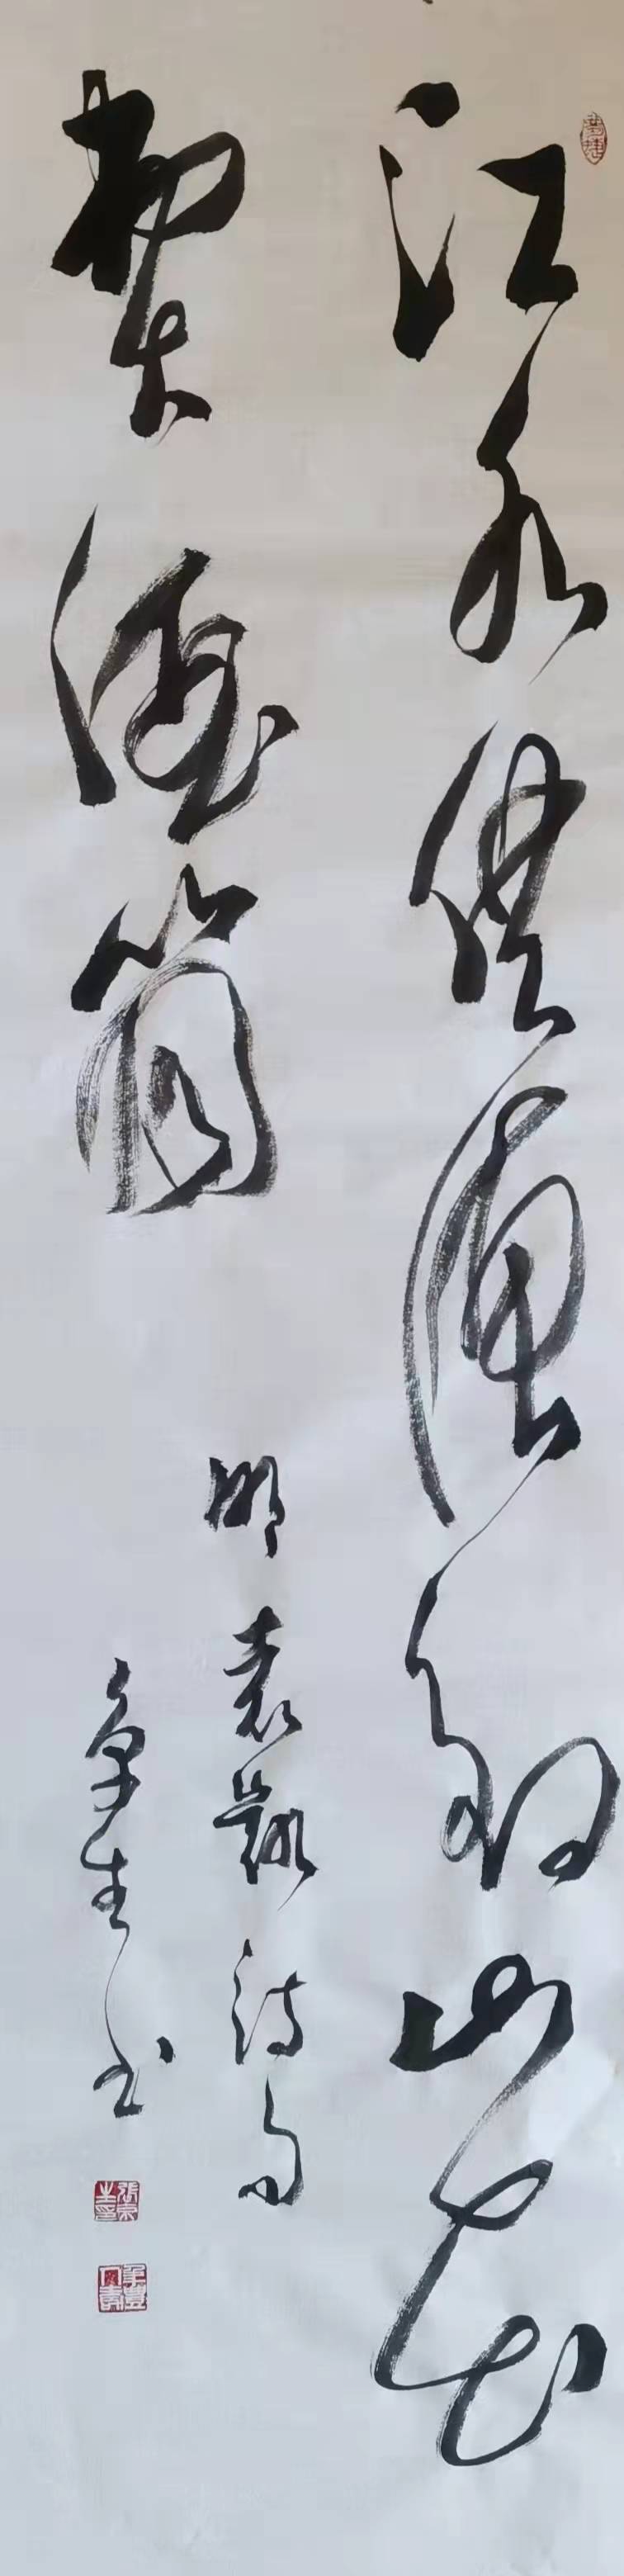 中国大众文化学会名人书画艺术发展委员会——张京生